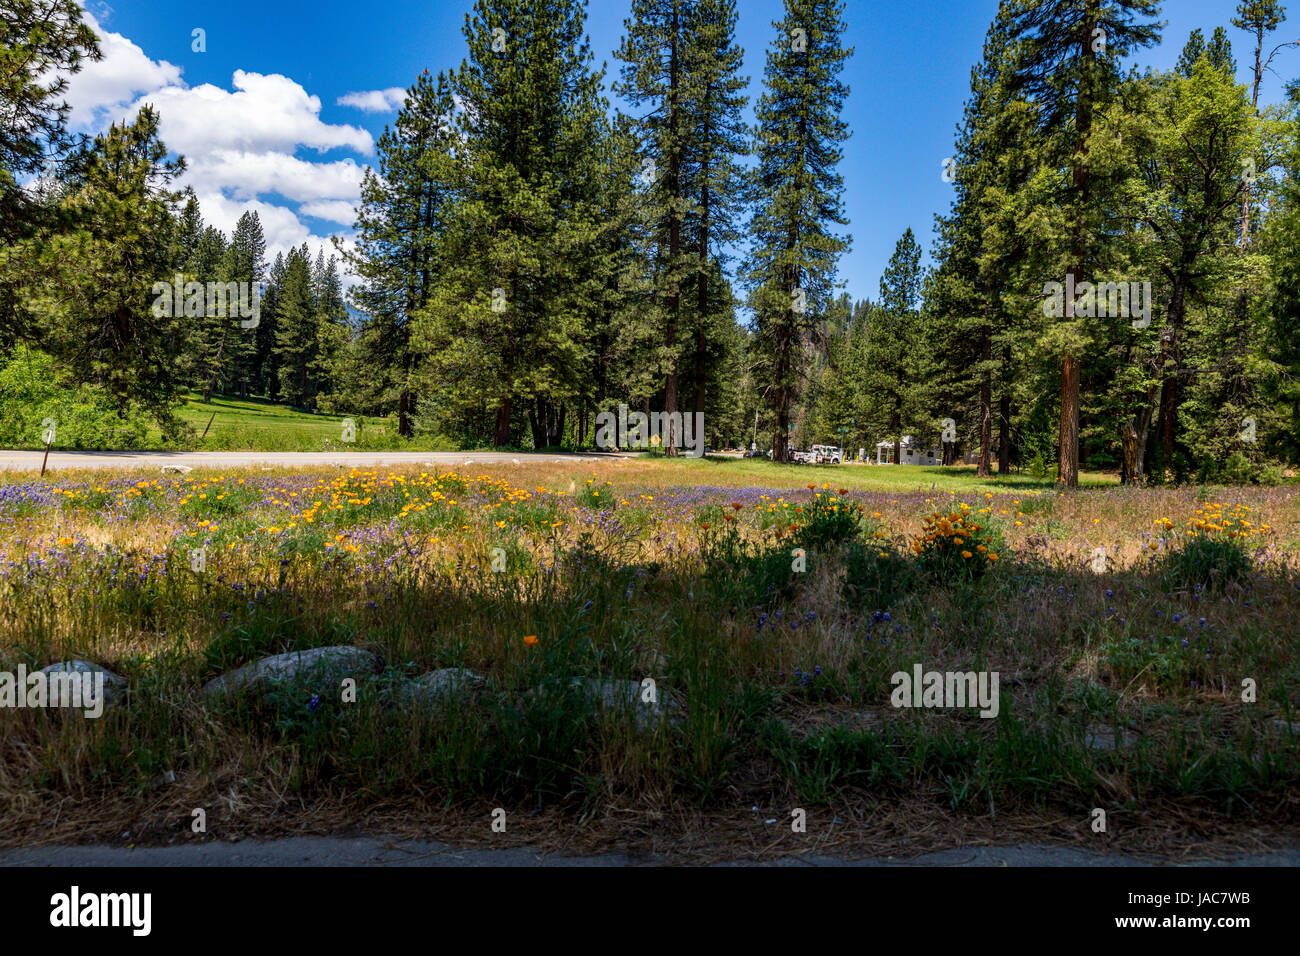 Au Parc National de Yosemite Wawona en Californie avec des fleurs sauvages et des parcours de golf Wawona, au loin. Banque D'Images